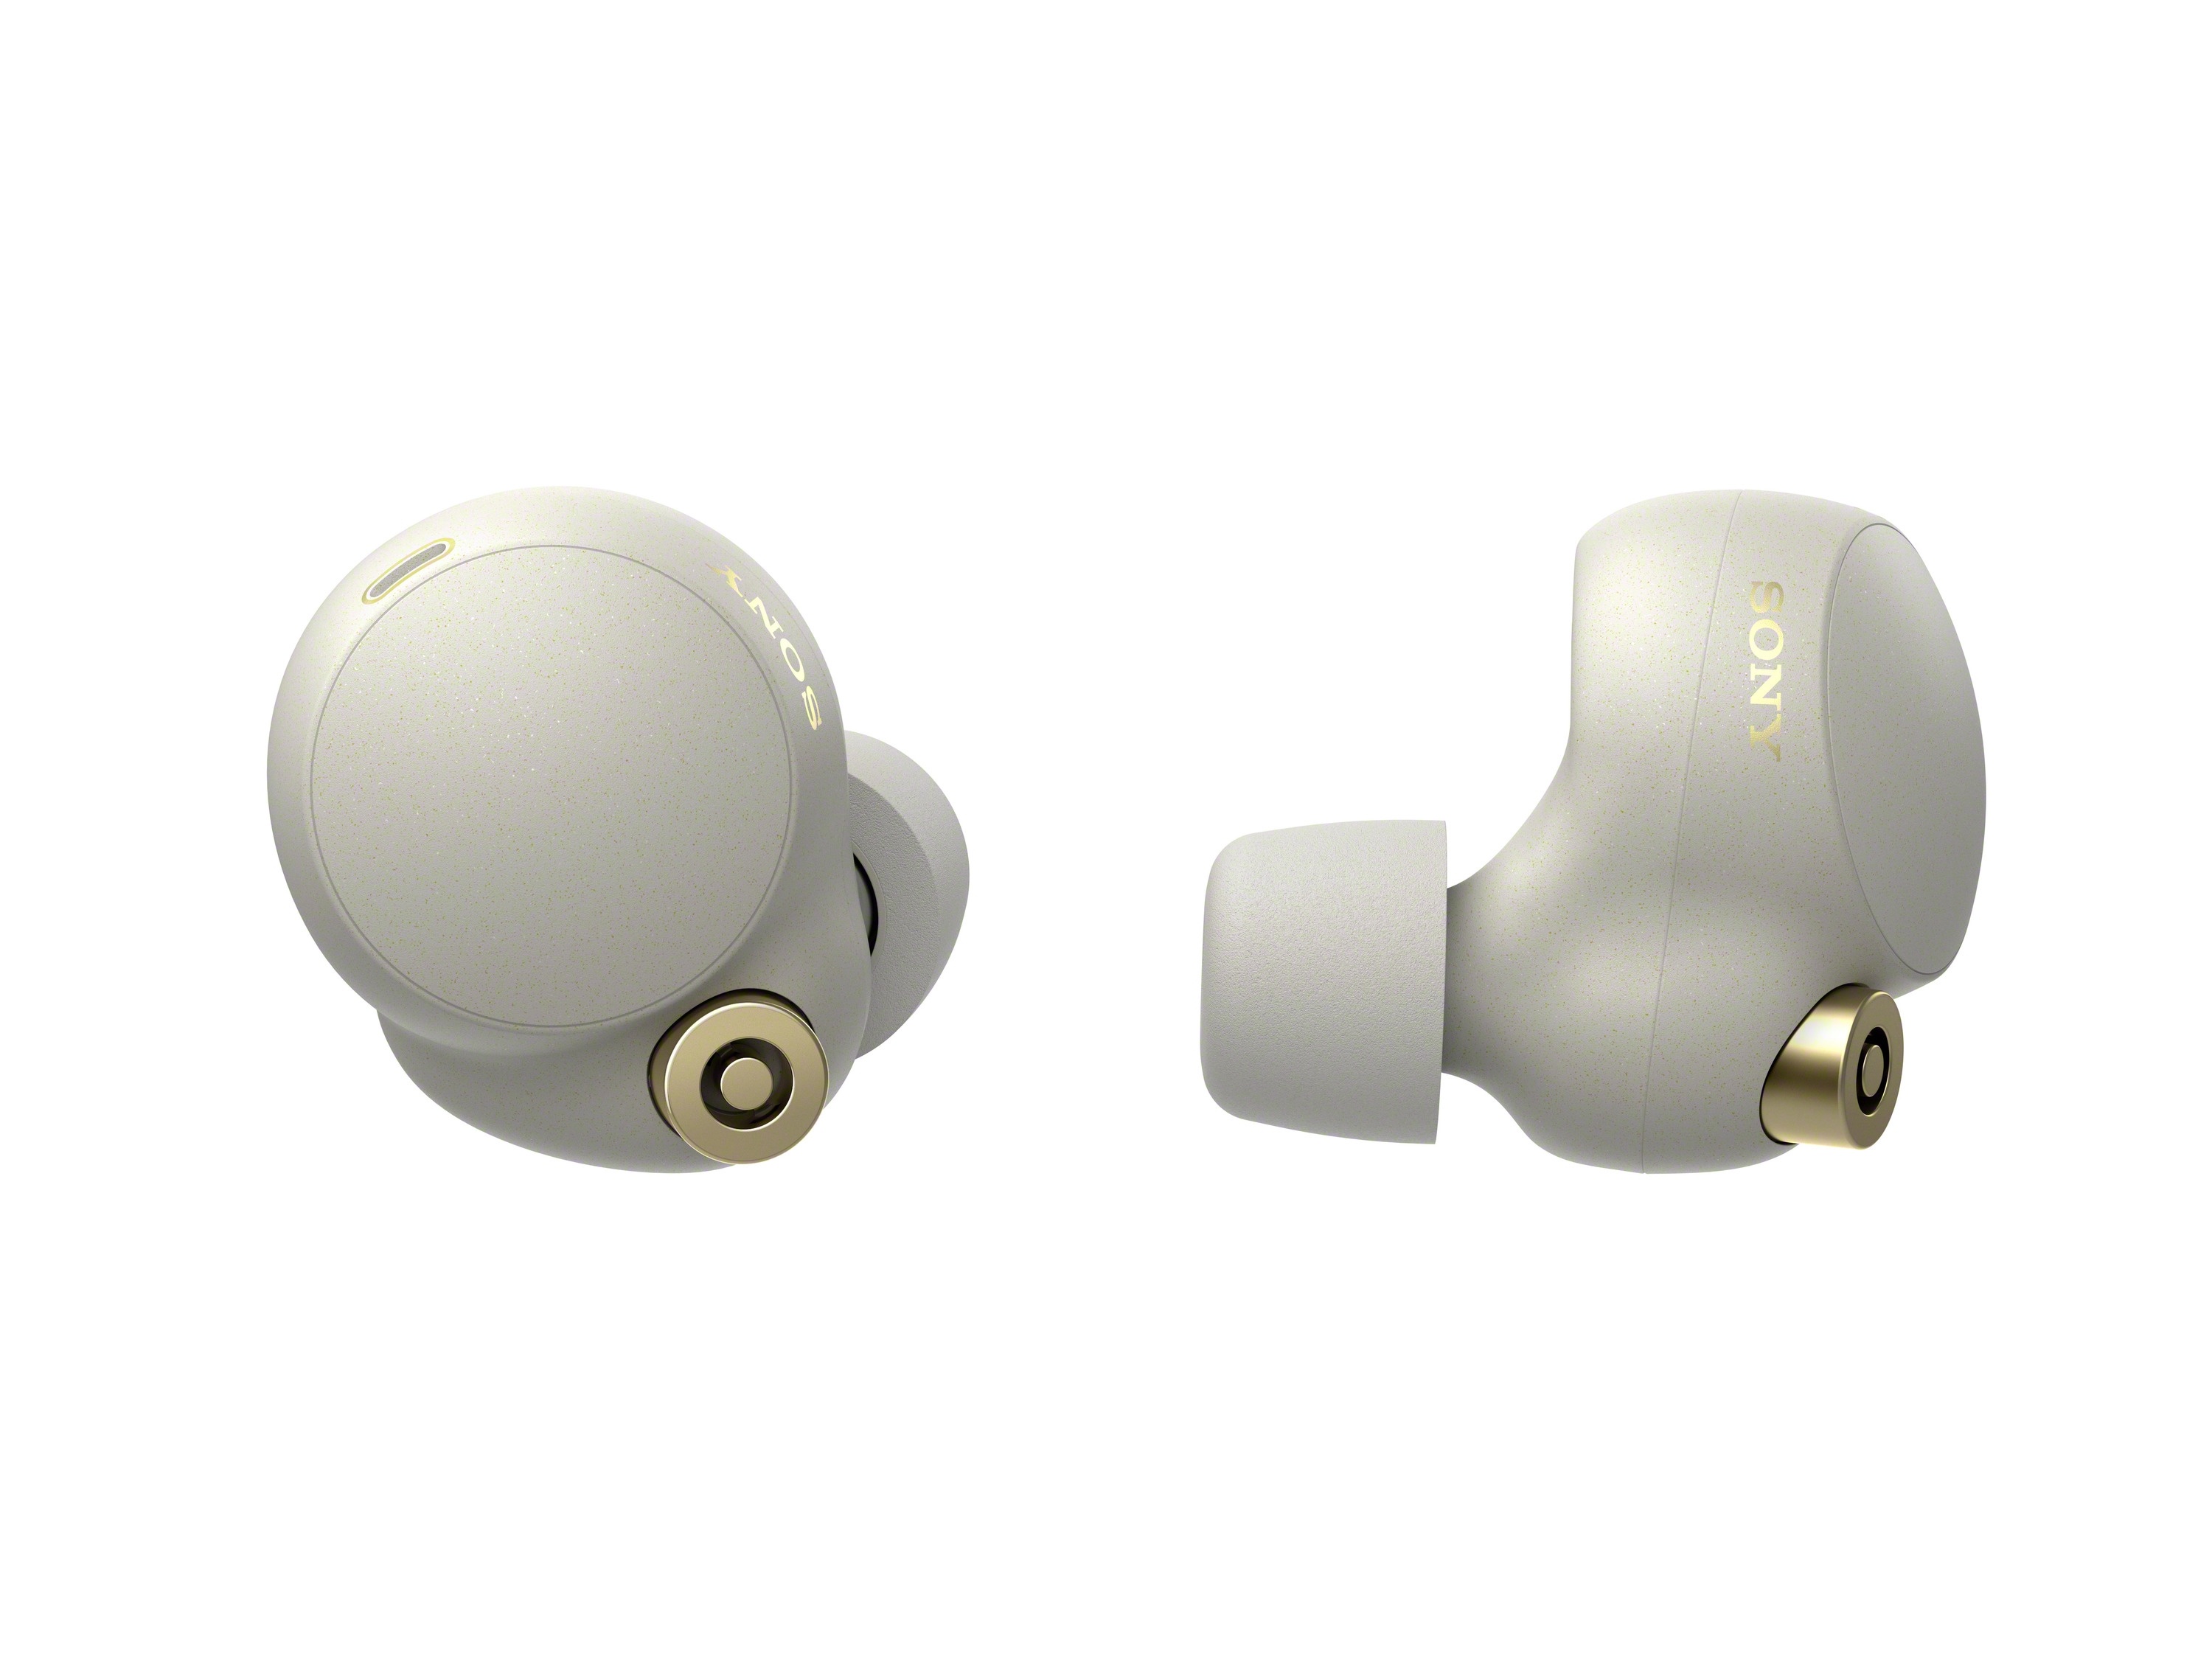 Sony WF-1000XM4 True Wireless Noise-Canceling Earphones (Silver)